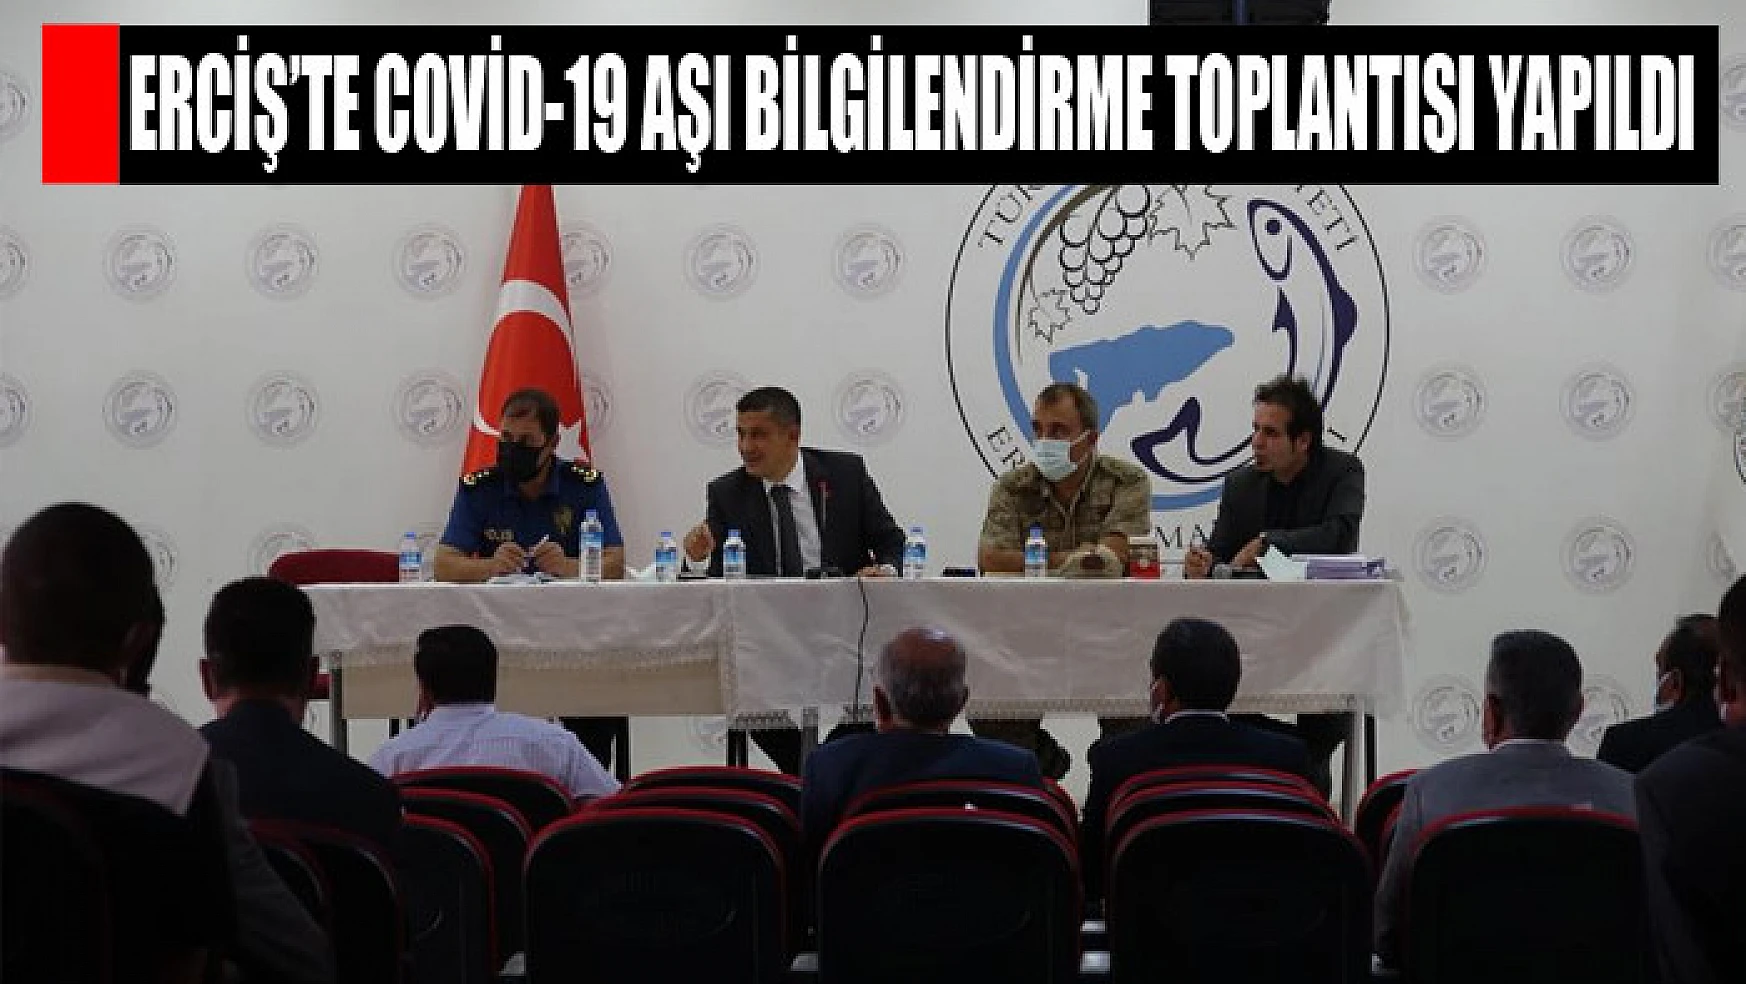 Erciş'te Covid-19 aşı bilgilendirme toplantısı yapıldı